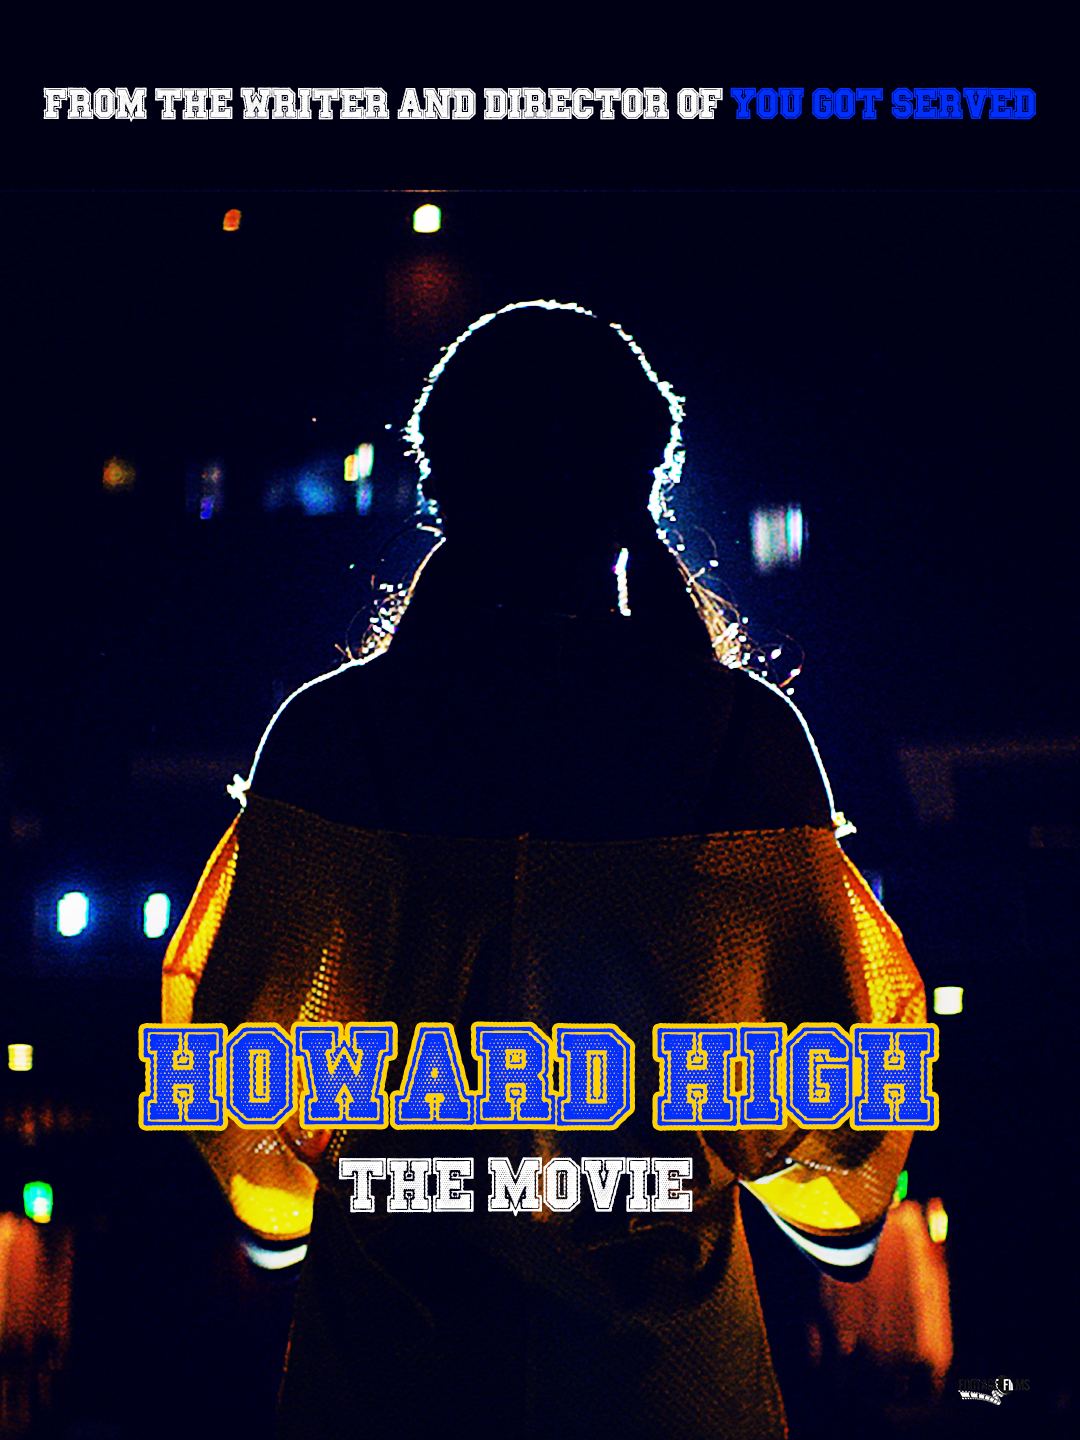 Howard High (2021)